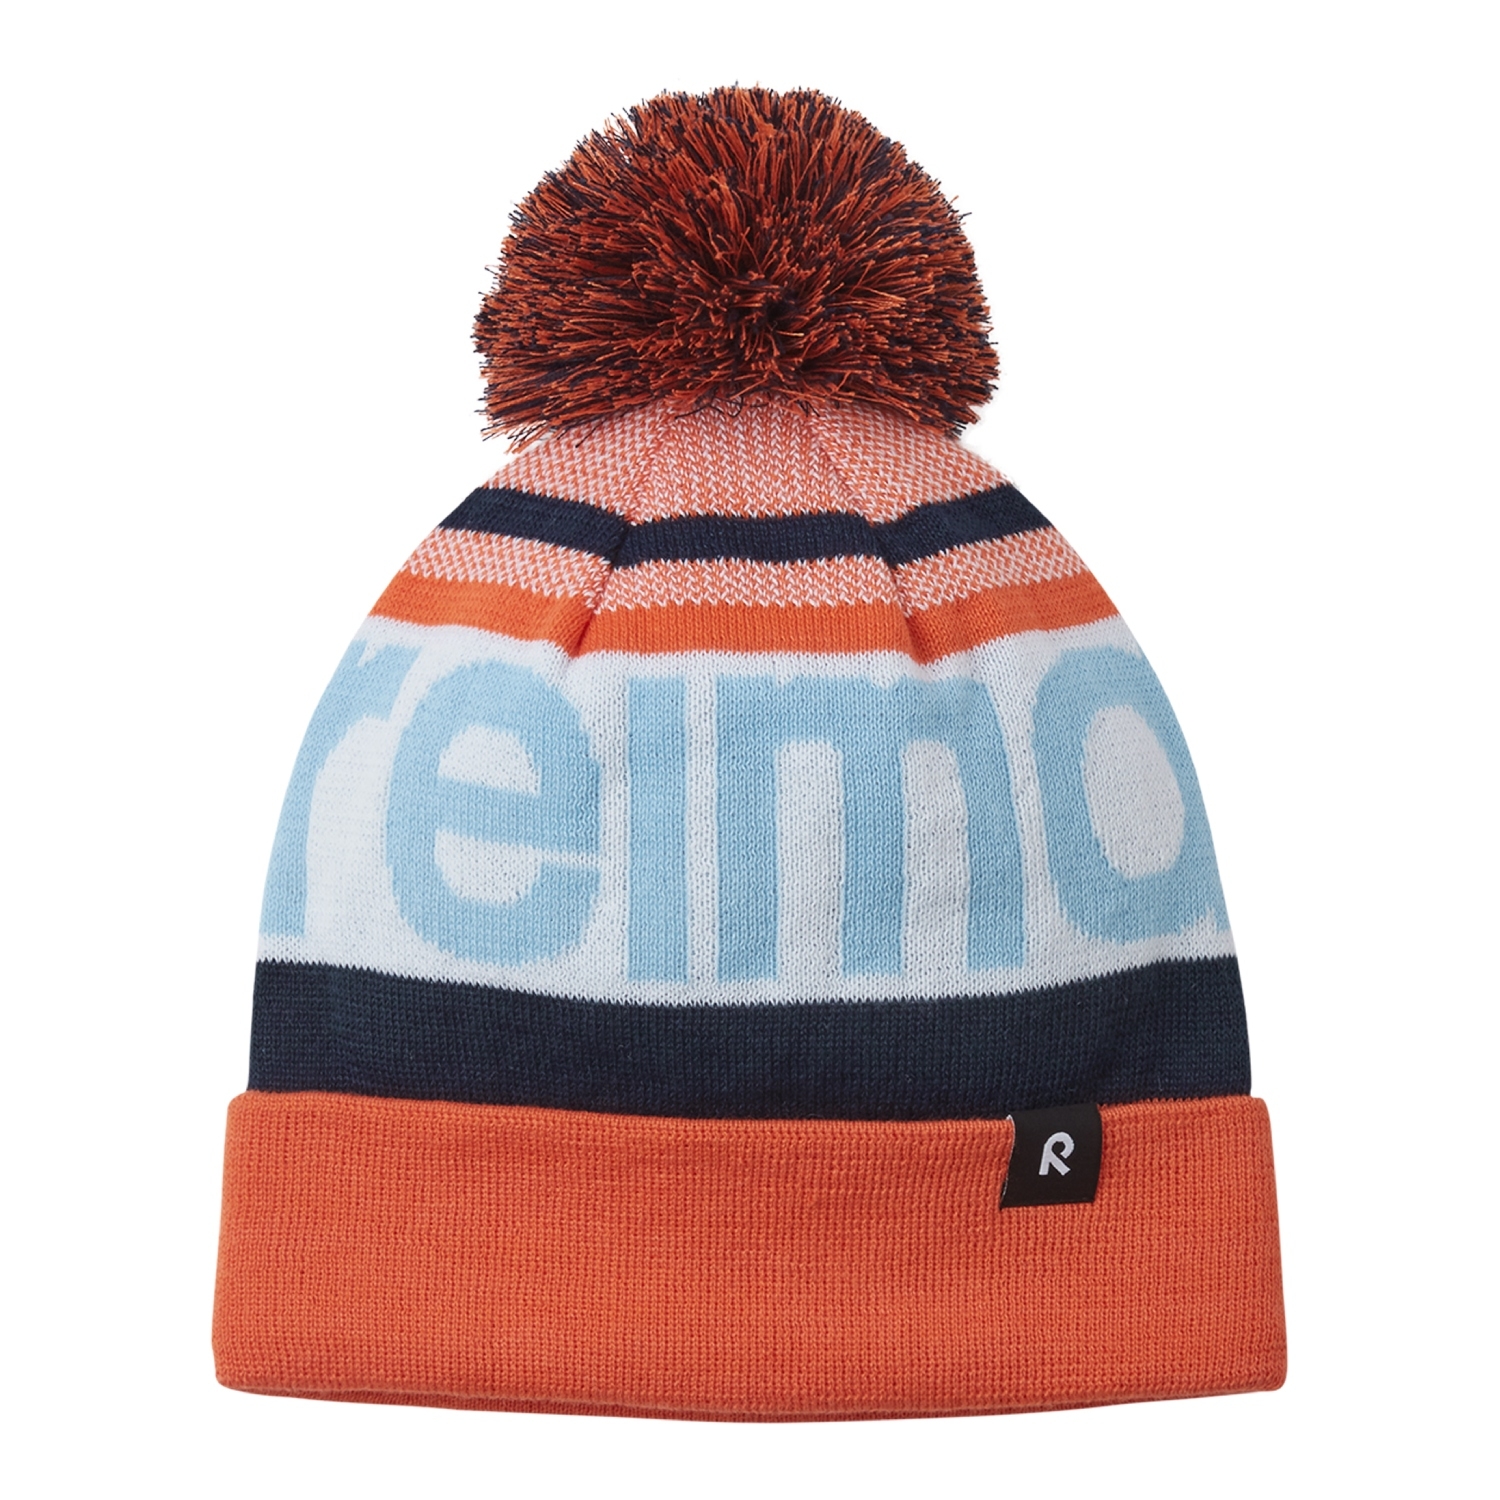 Dziecięca czapka zimowa Reima Taasko red orange - 48/50 cm